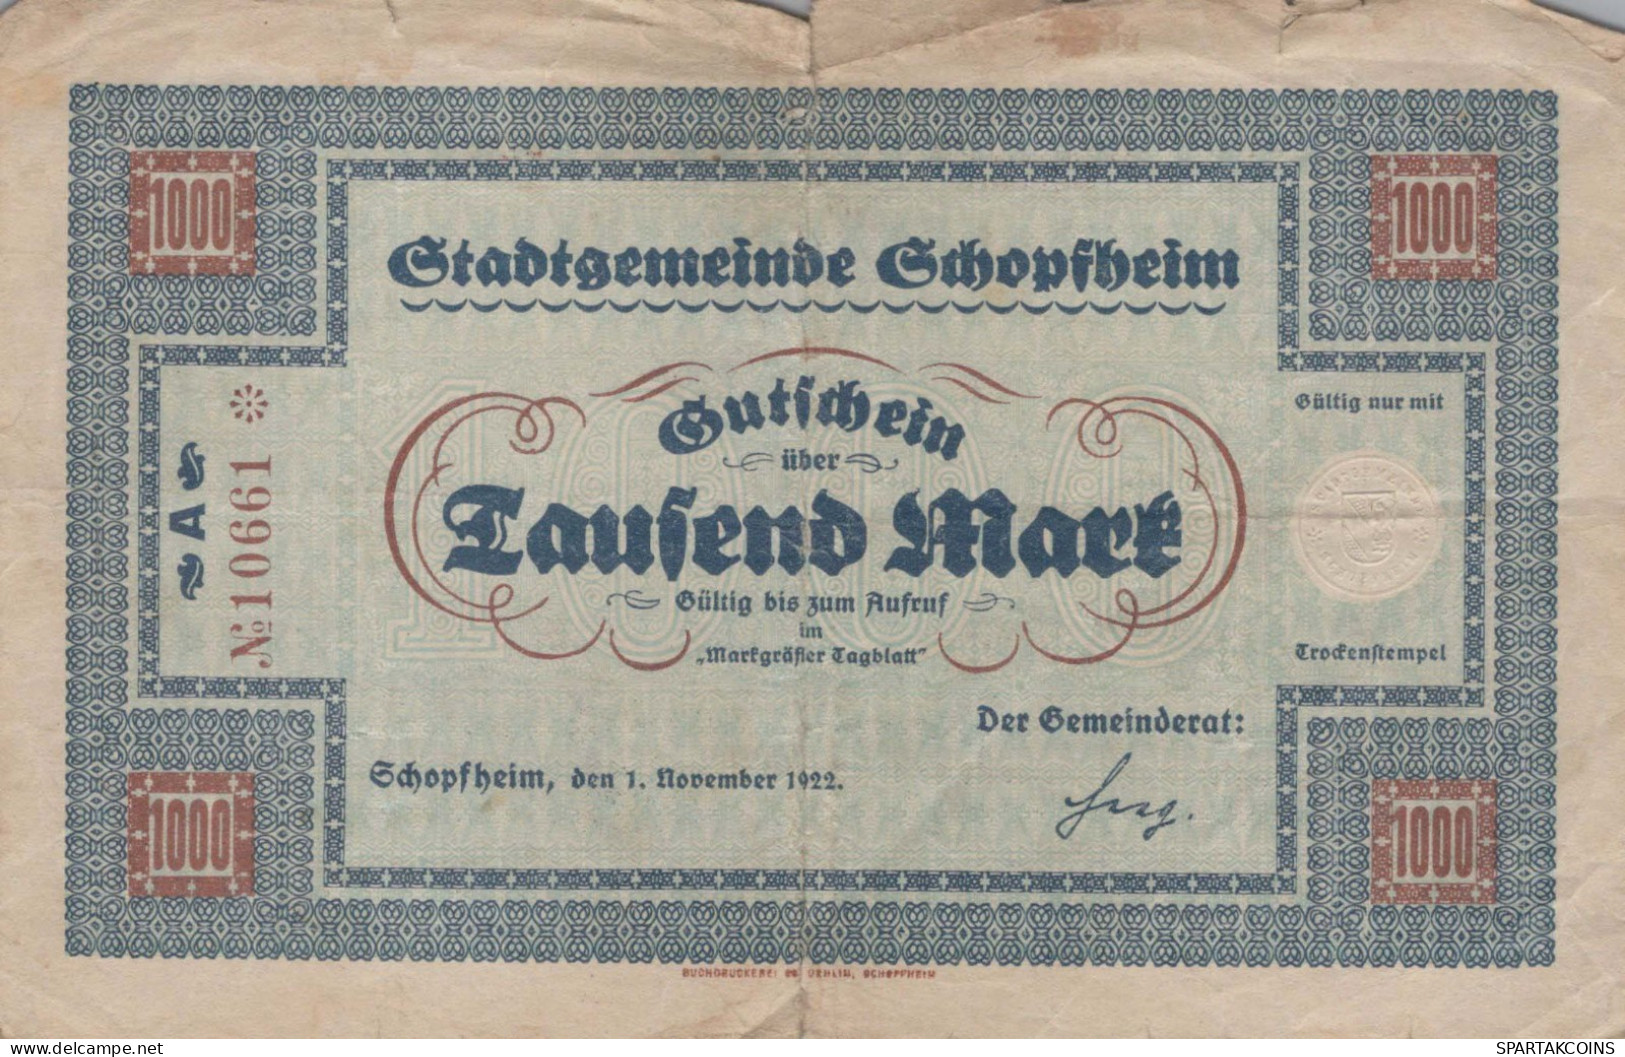 1000 MARK 1922 Stadt SCHOPFHEIM Baden DEUTSCHLAND Notgeld Papiergeld Banknote #PK960 - [11] Emissions Locales